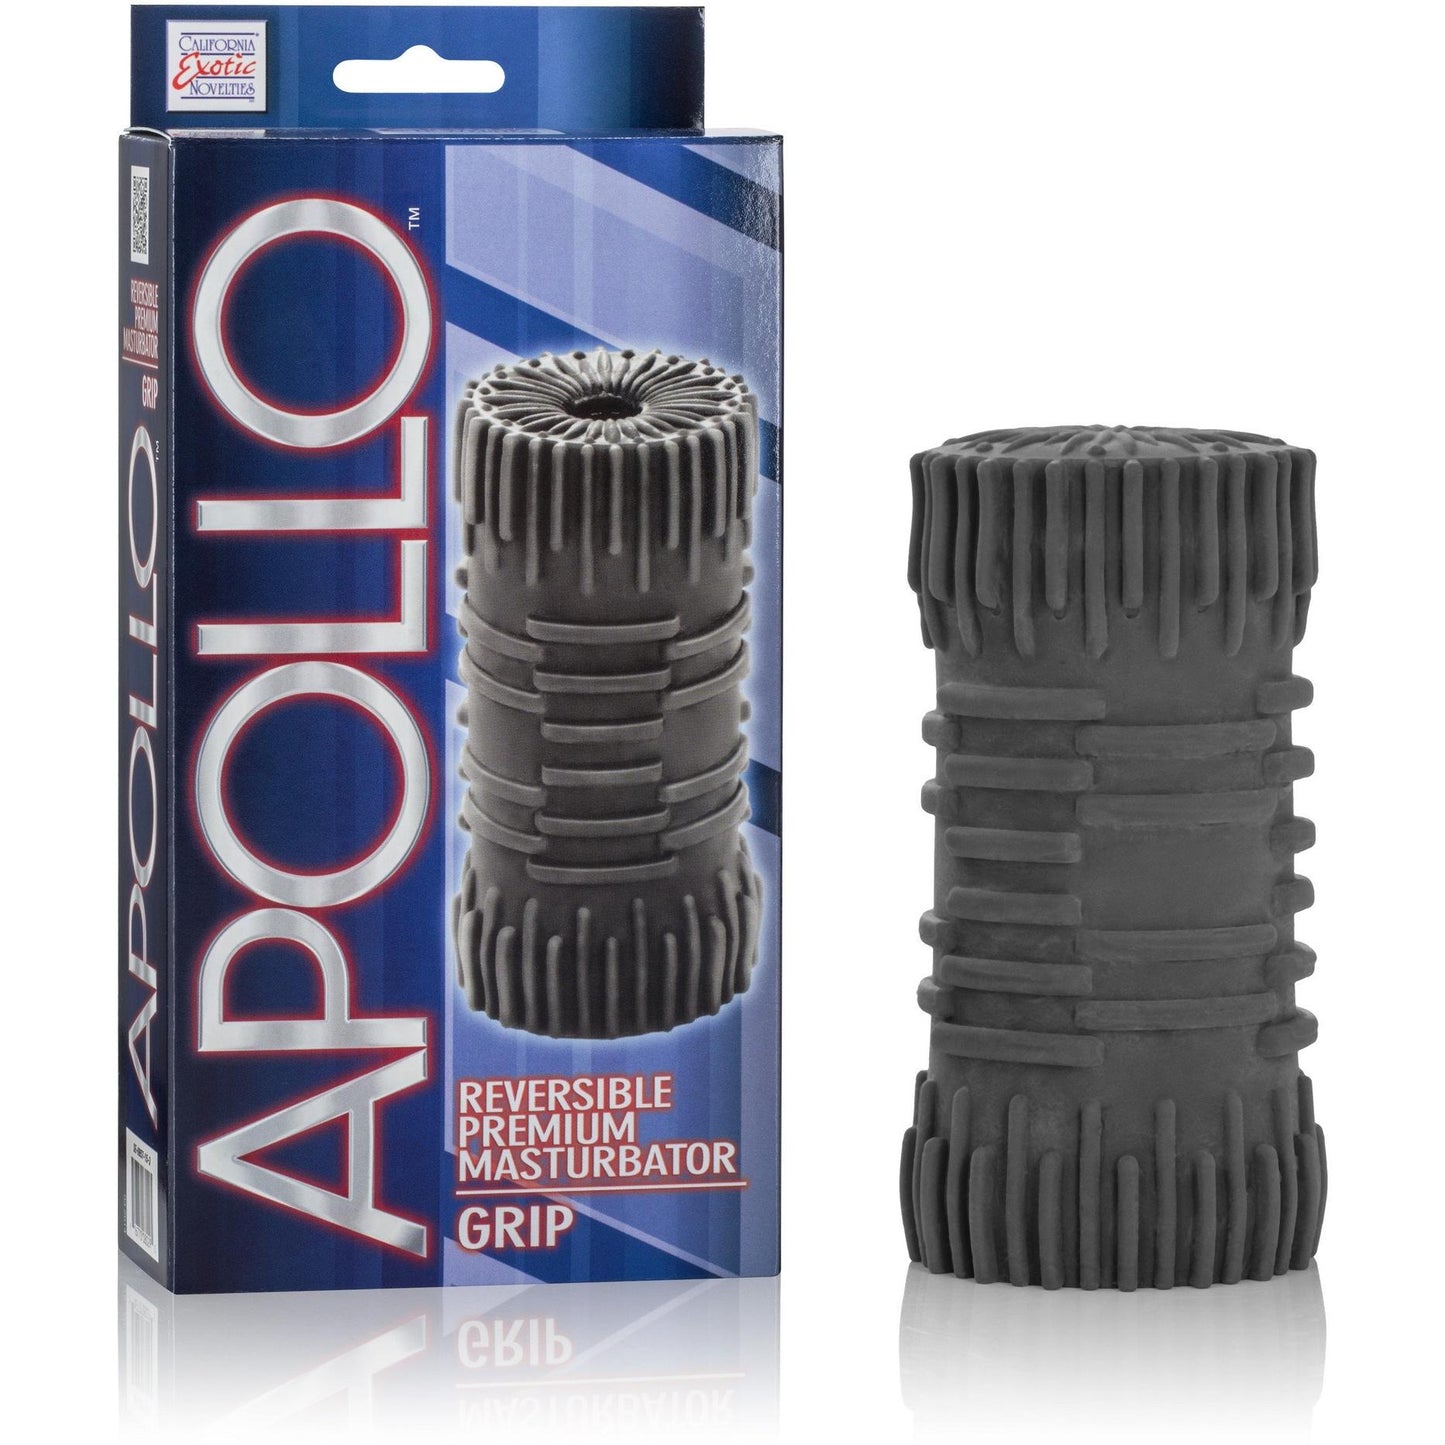 Apollo Grip Reversible Masturbator